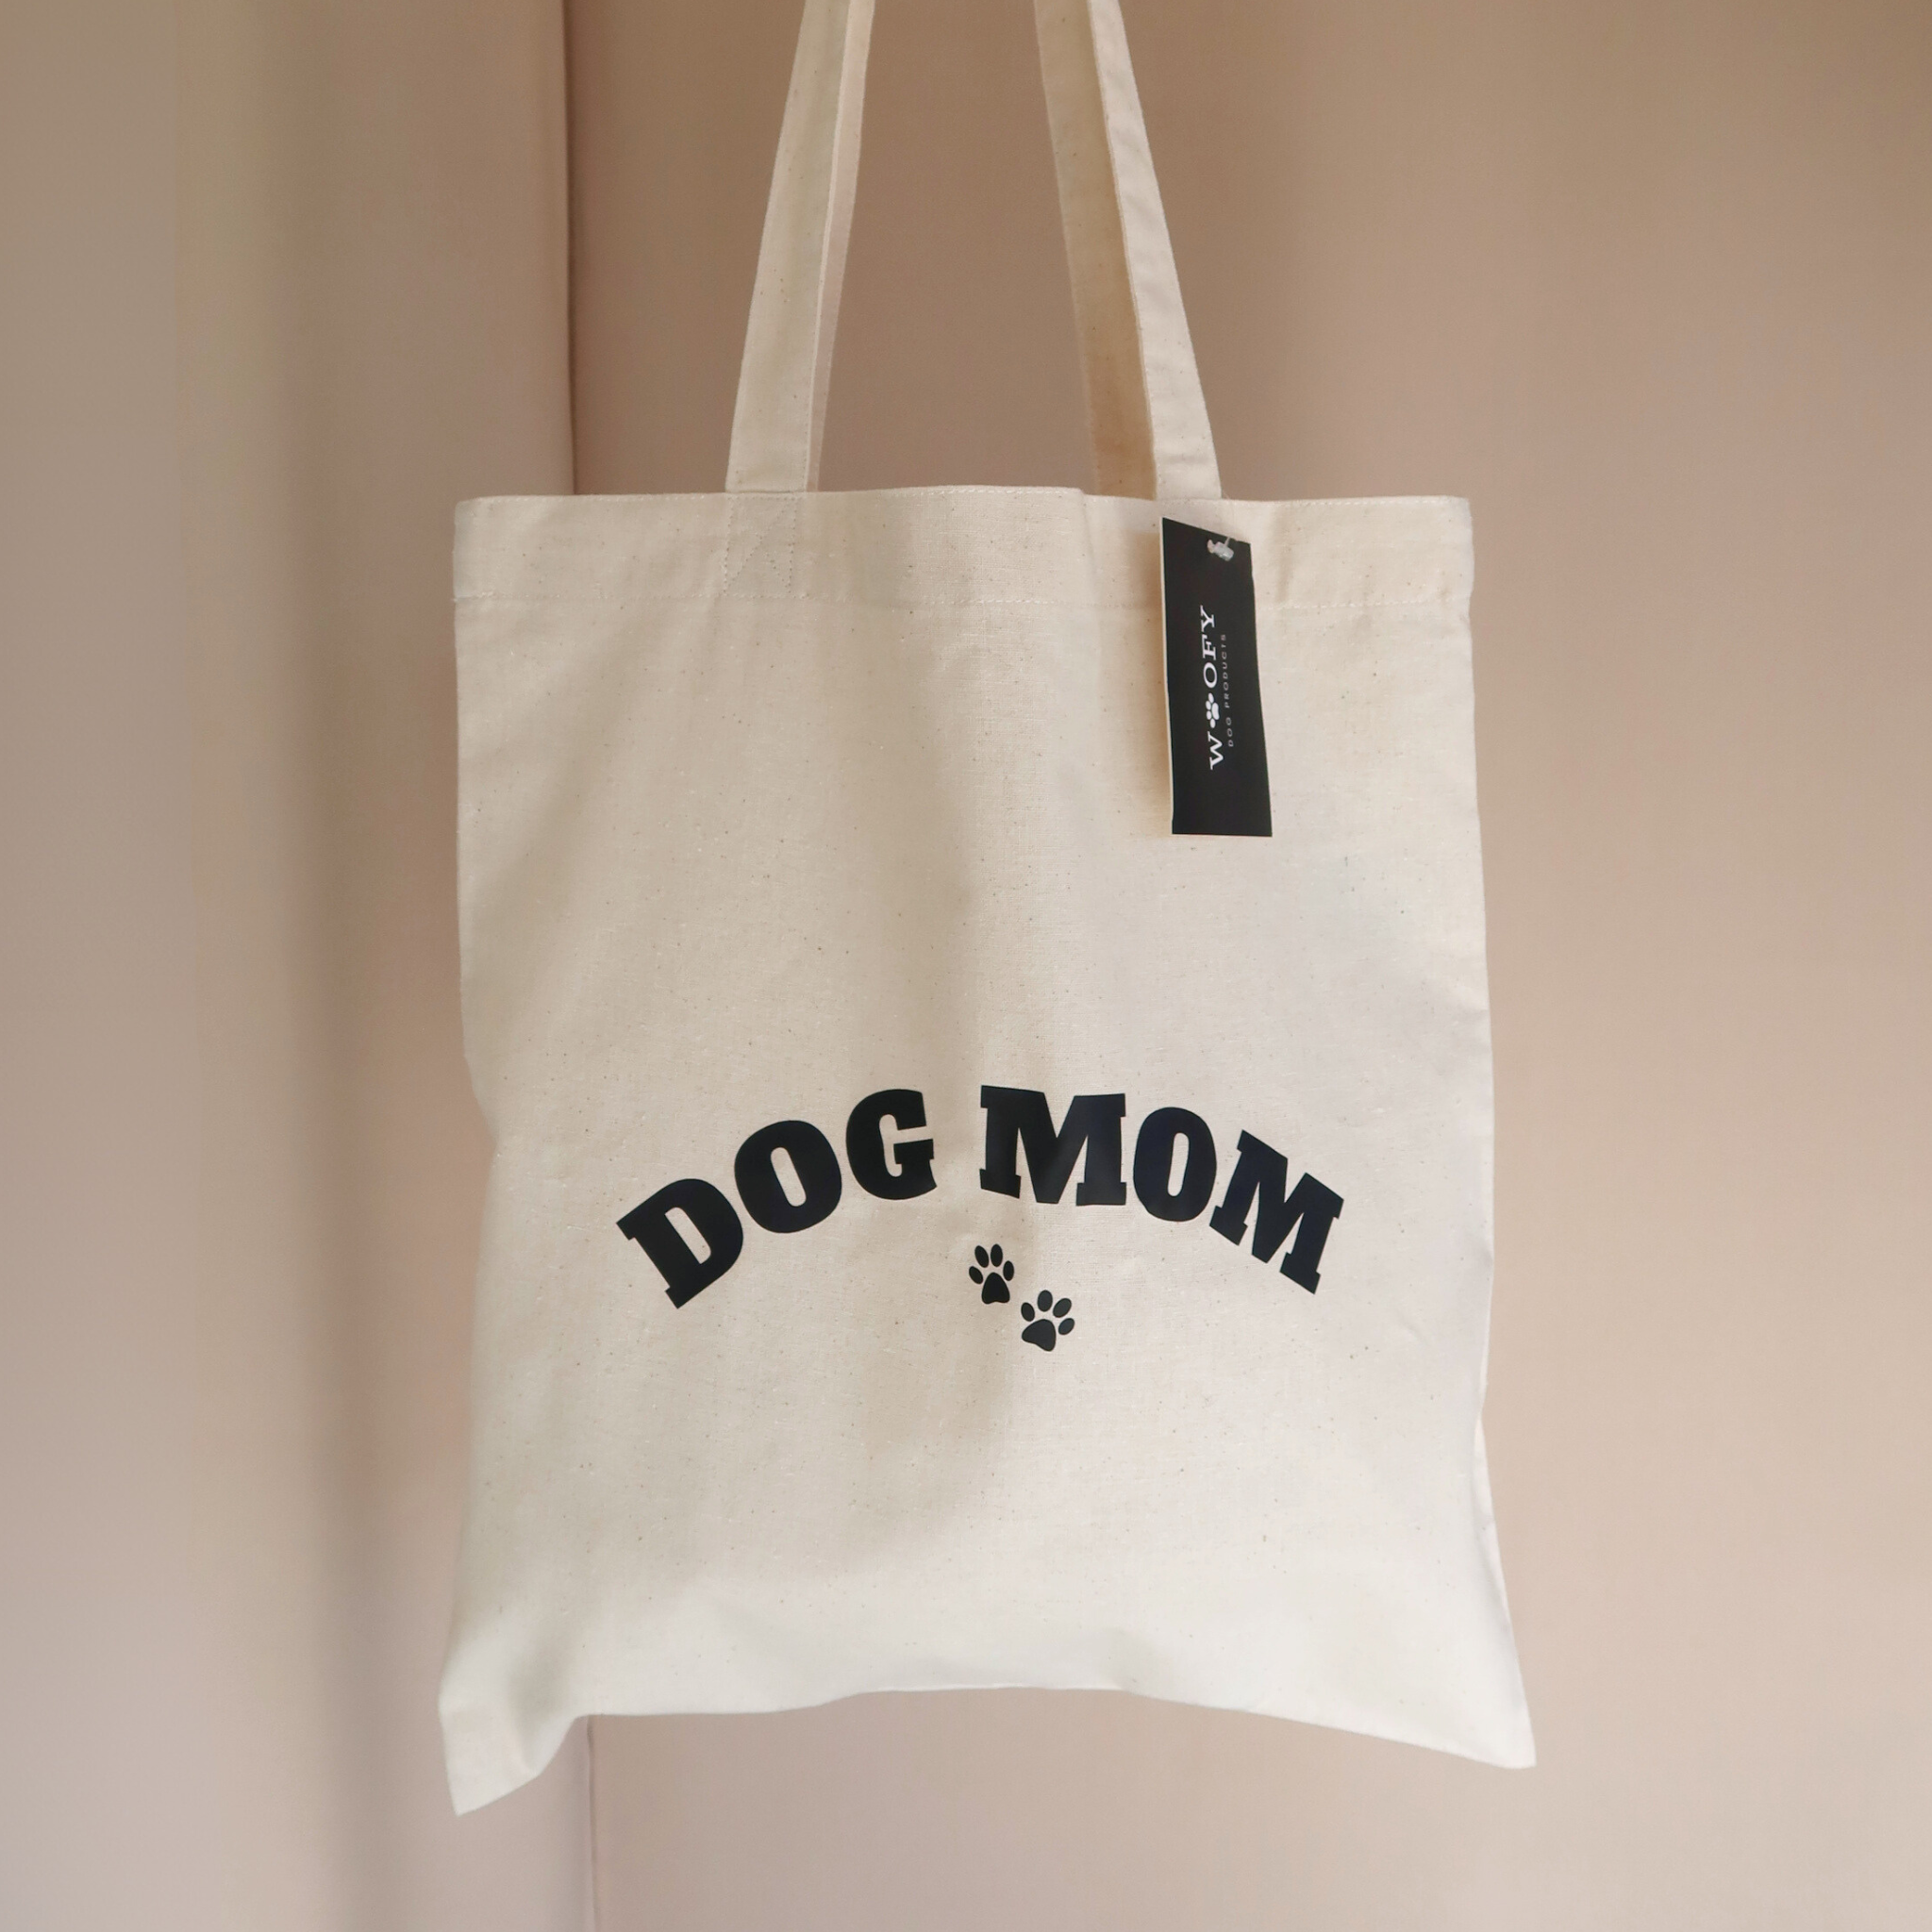 'Dog mom' tote bag